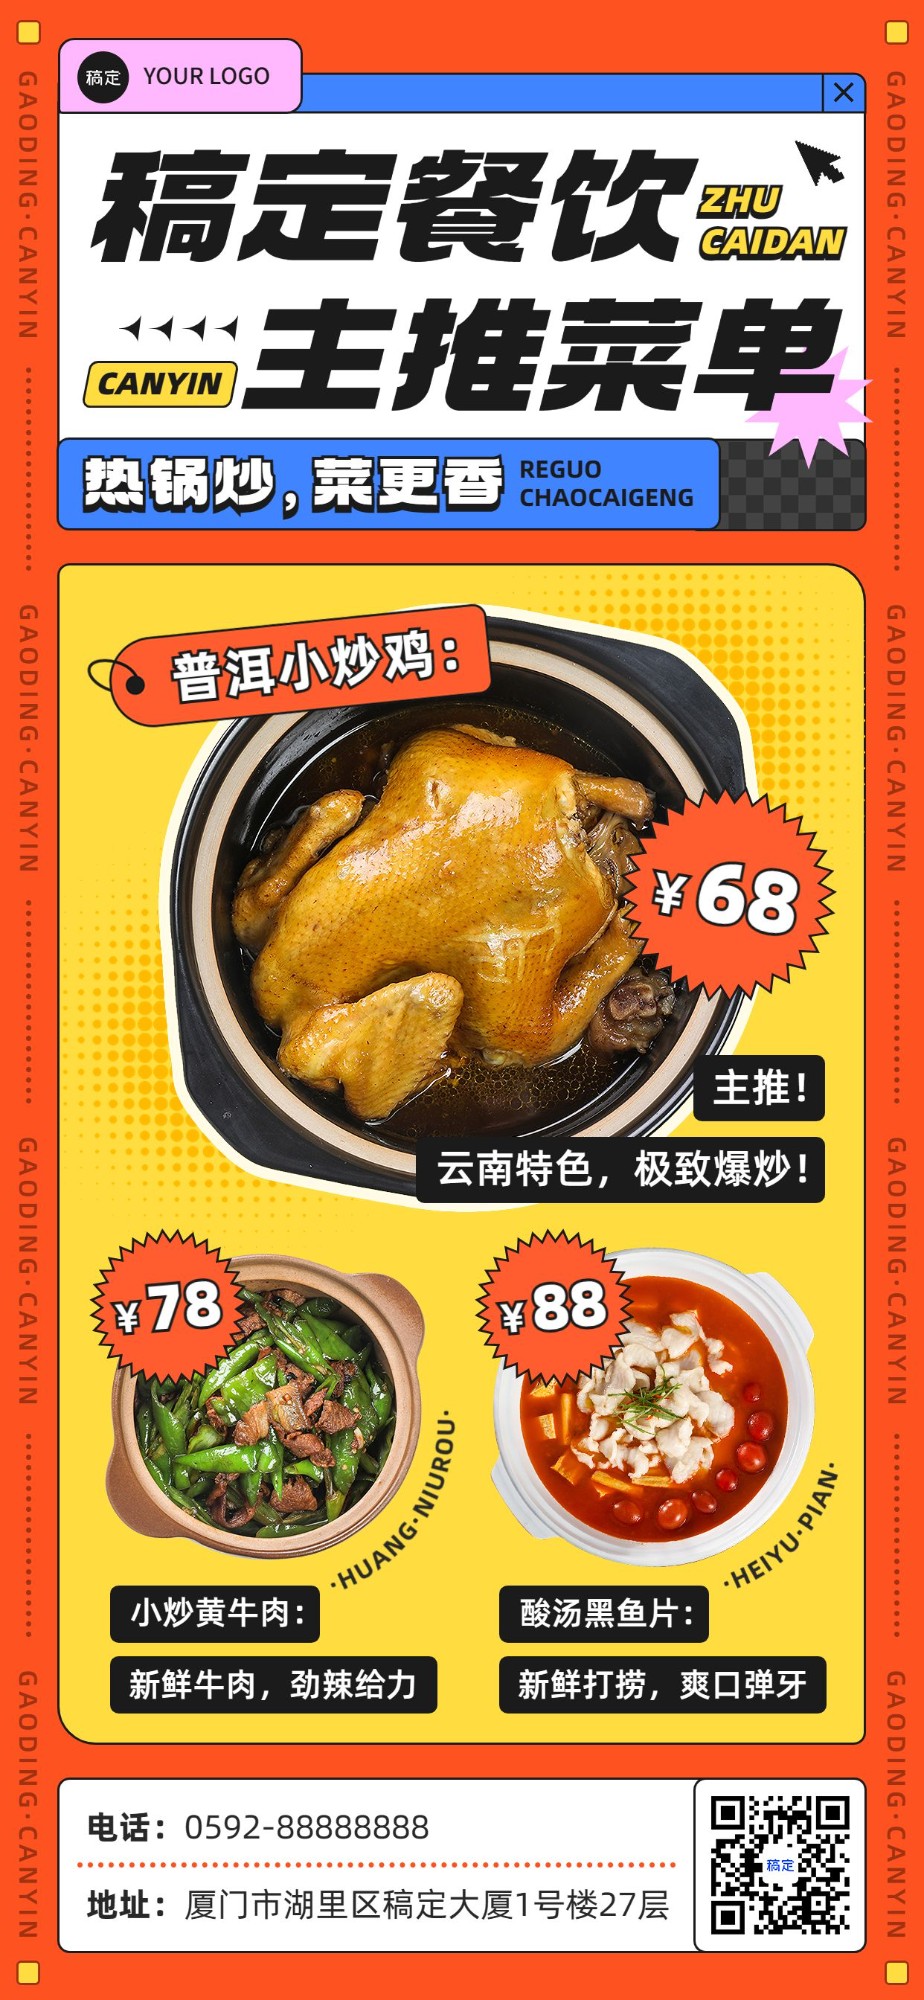 餐饮美食品牌宣传中式快餐热门产品菜单全屏竖版海报